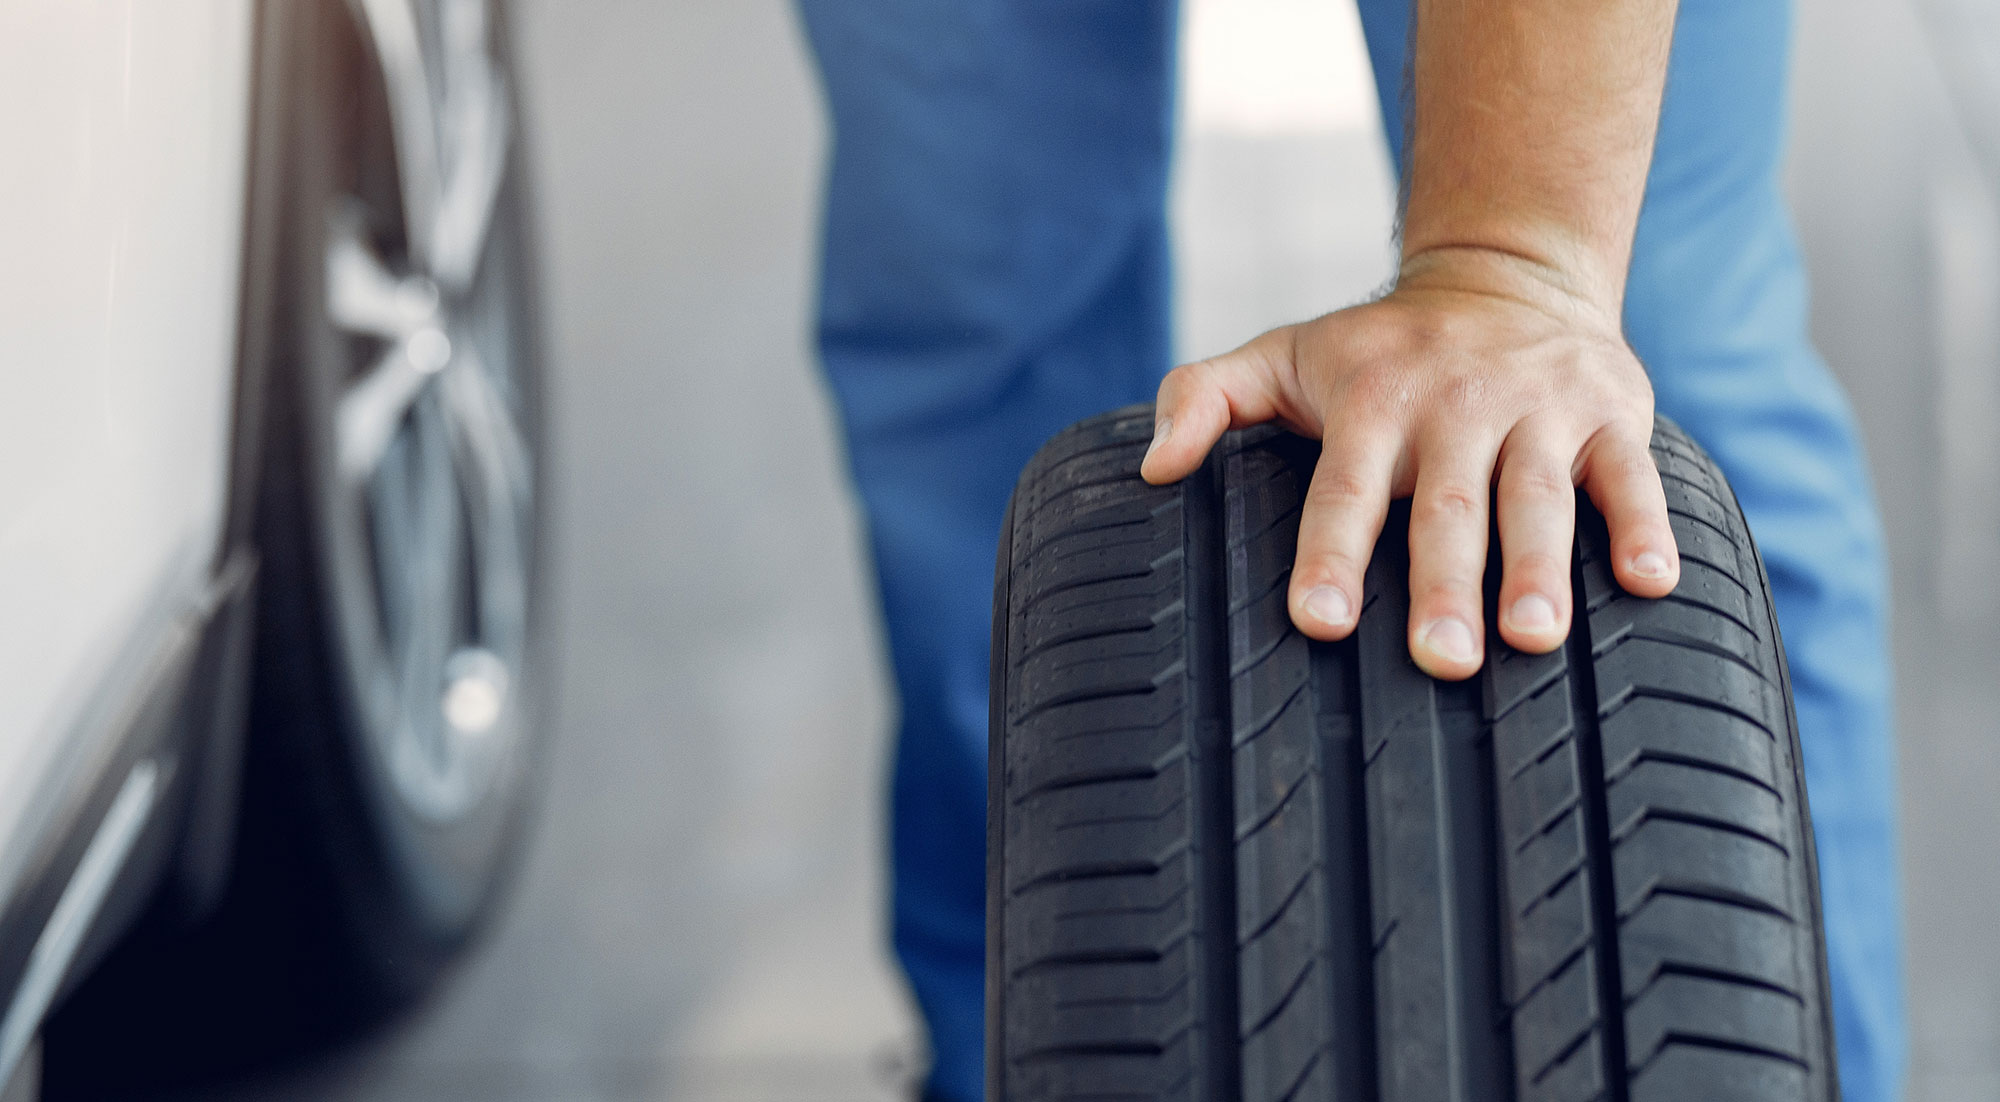 Neumáticos baratos: cómo elegirlos y los posibles riesgos